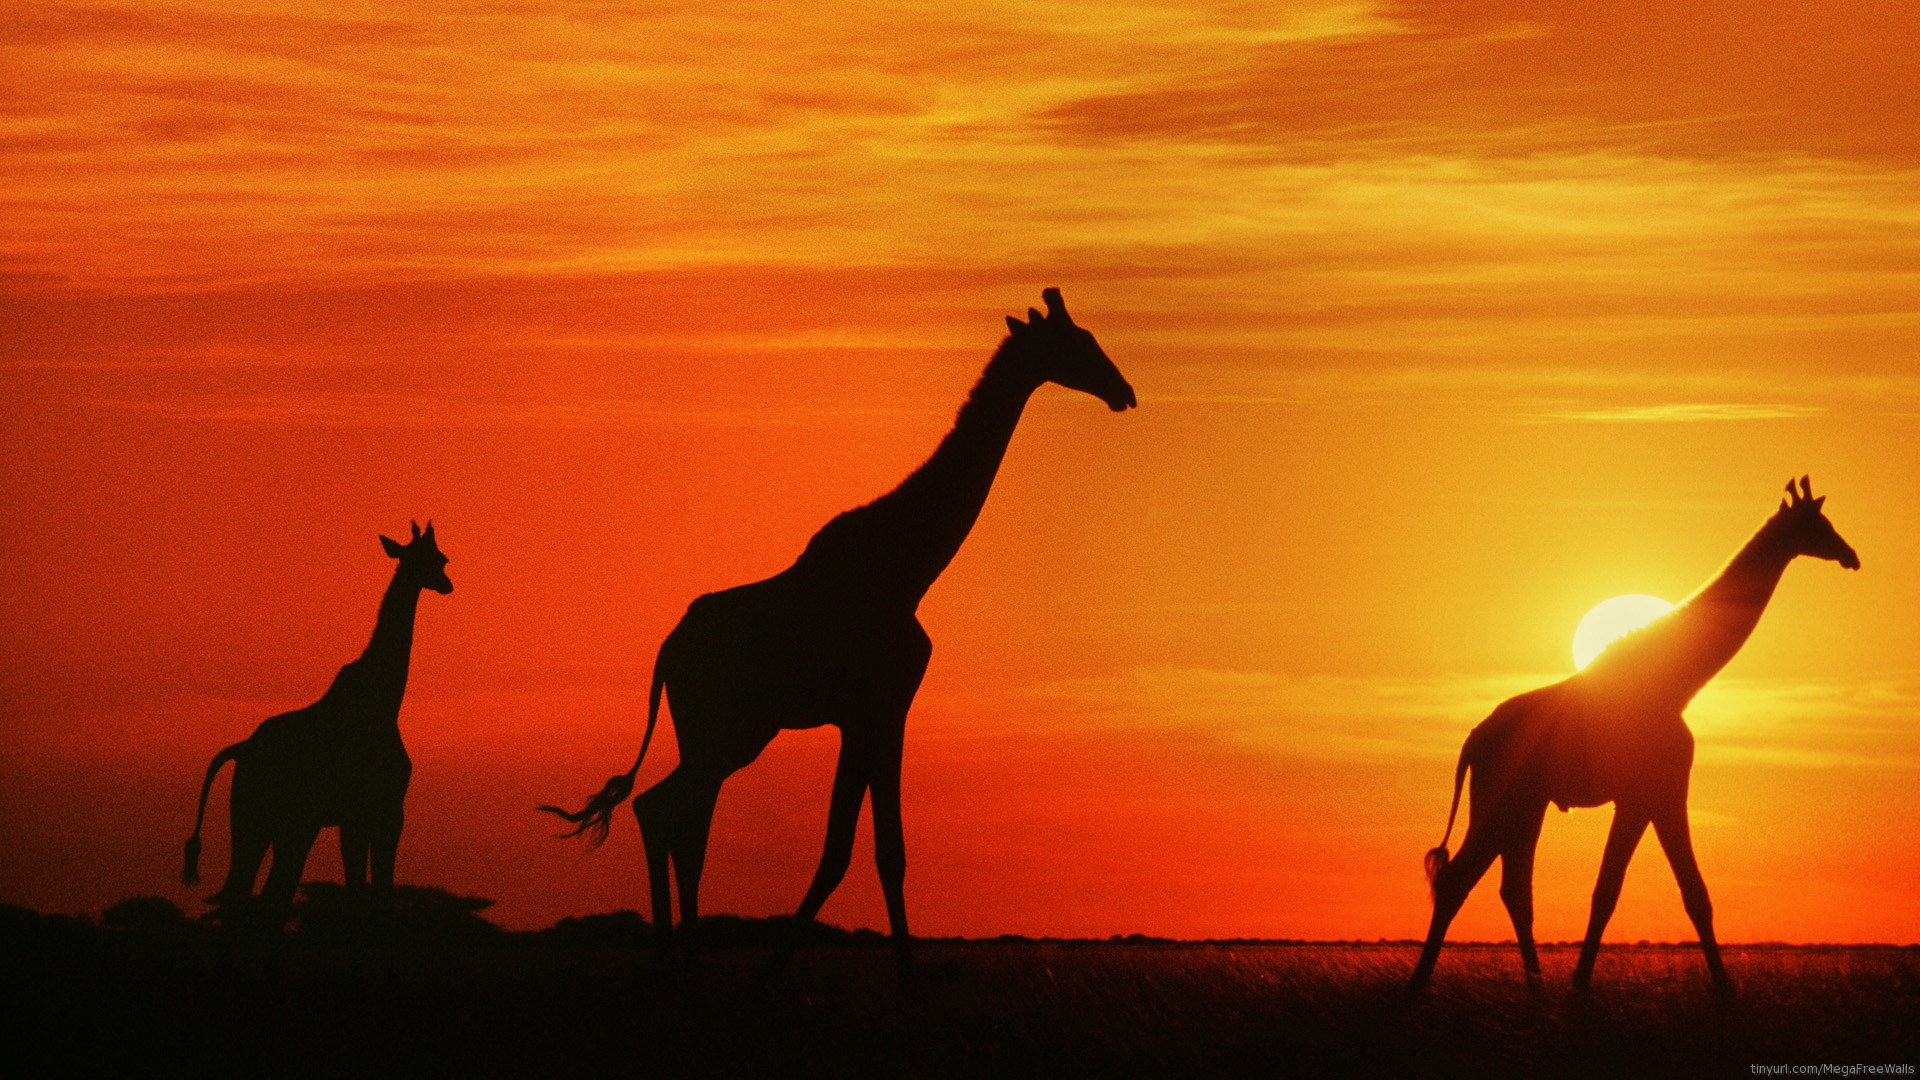 HD Giraffe Siluet in Sunset 1080p Wallpaper Full Size